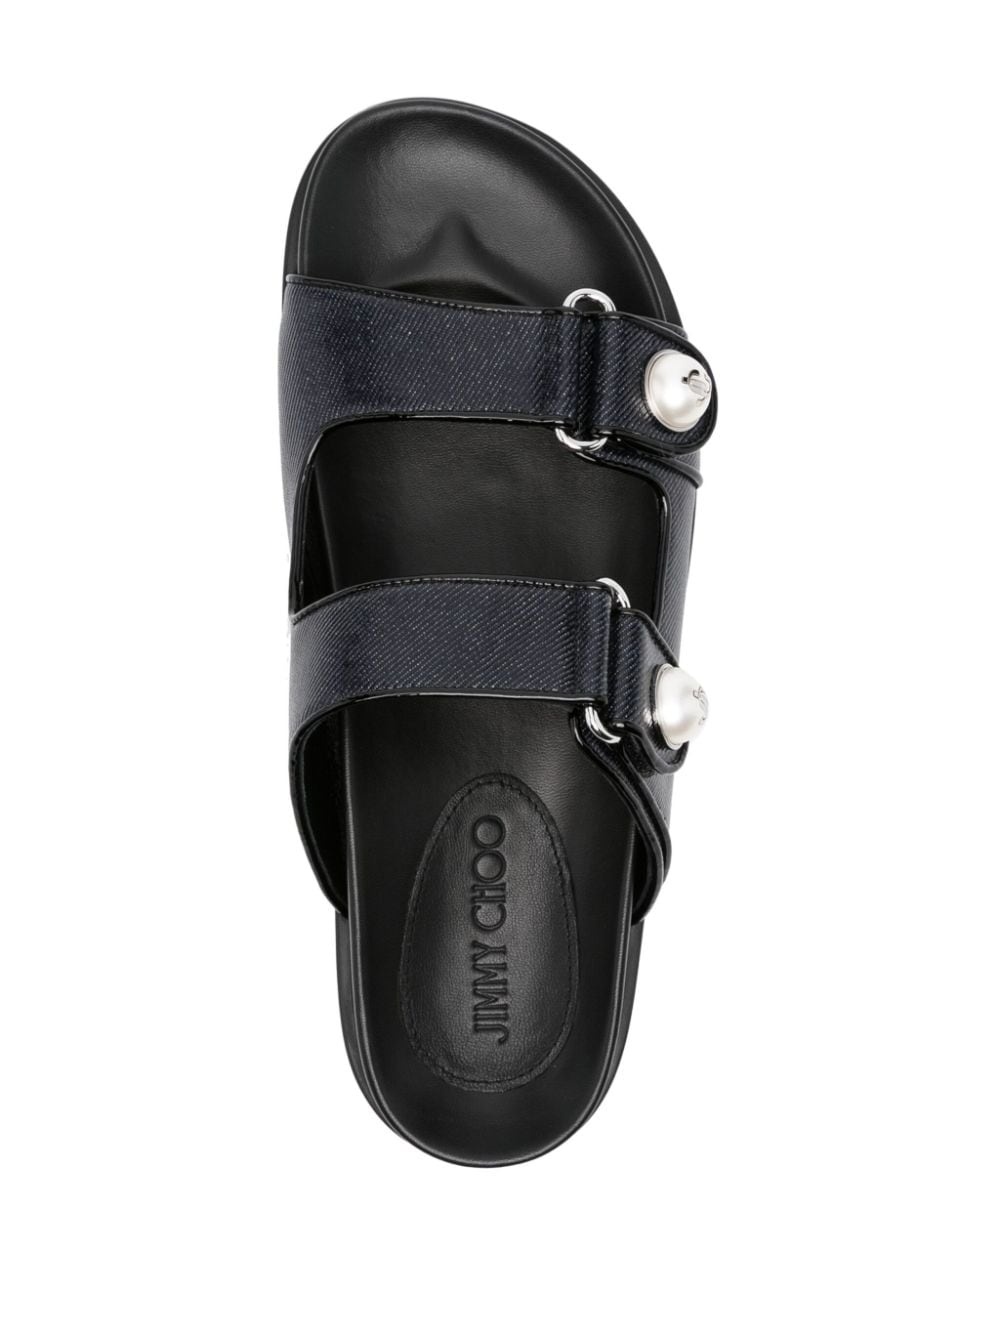 Fayence embellished leather sandals - 4